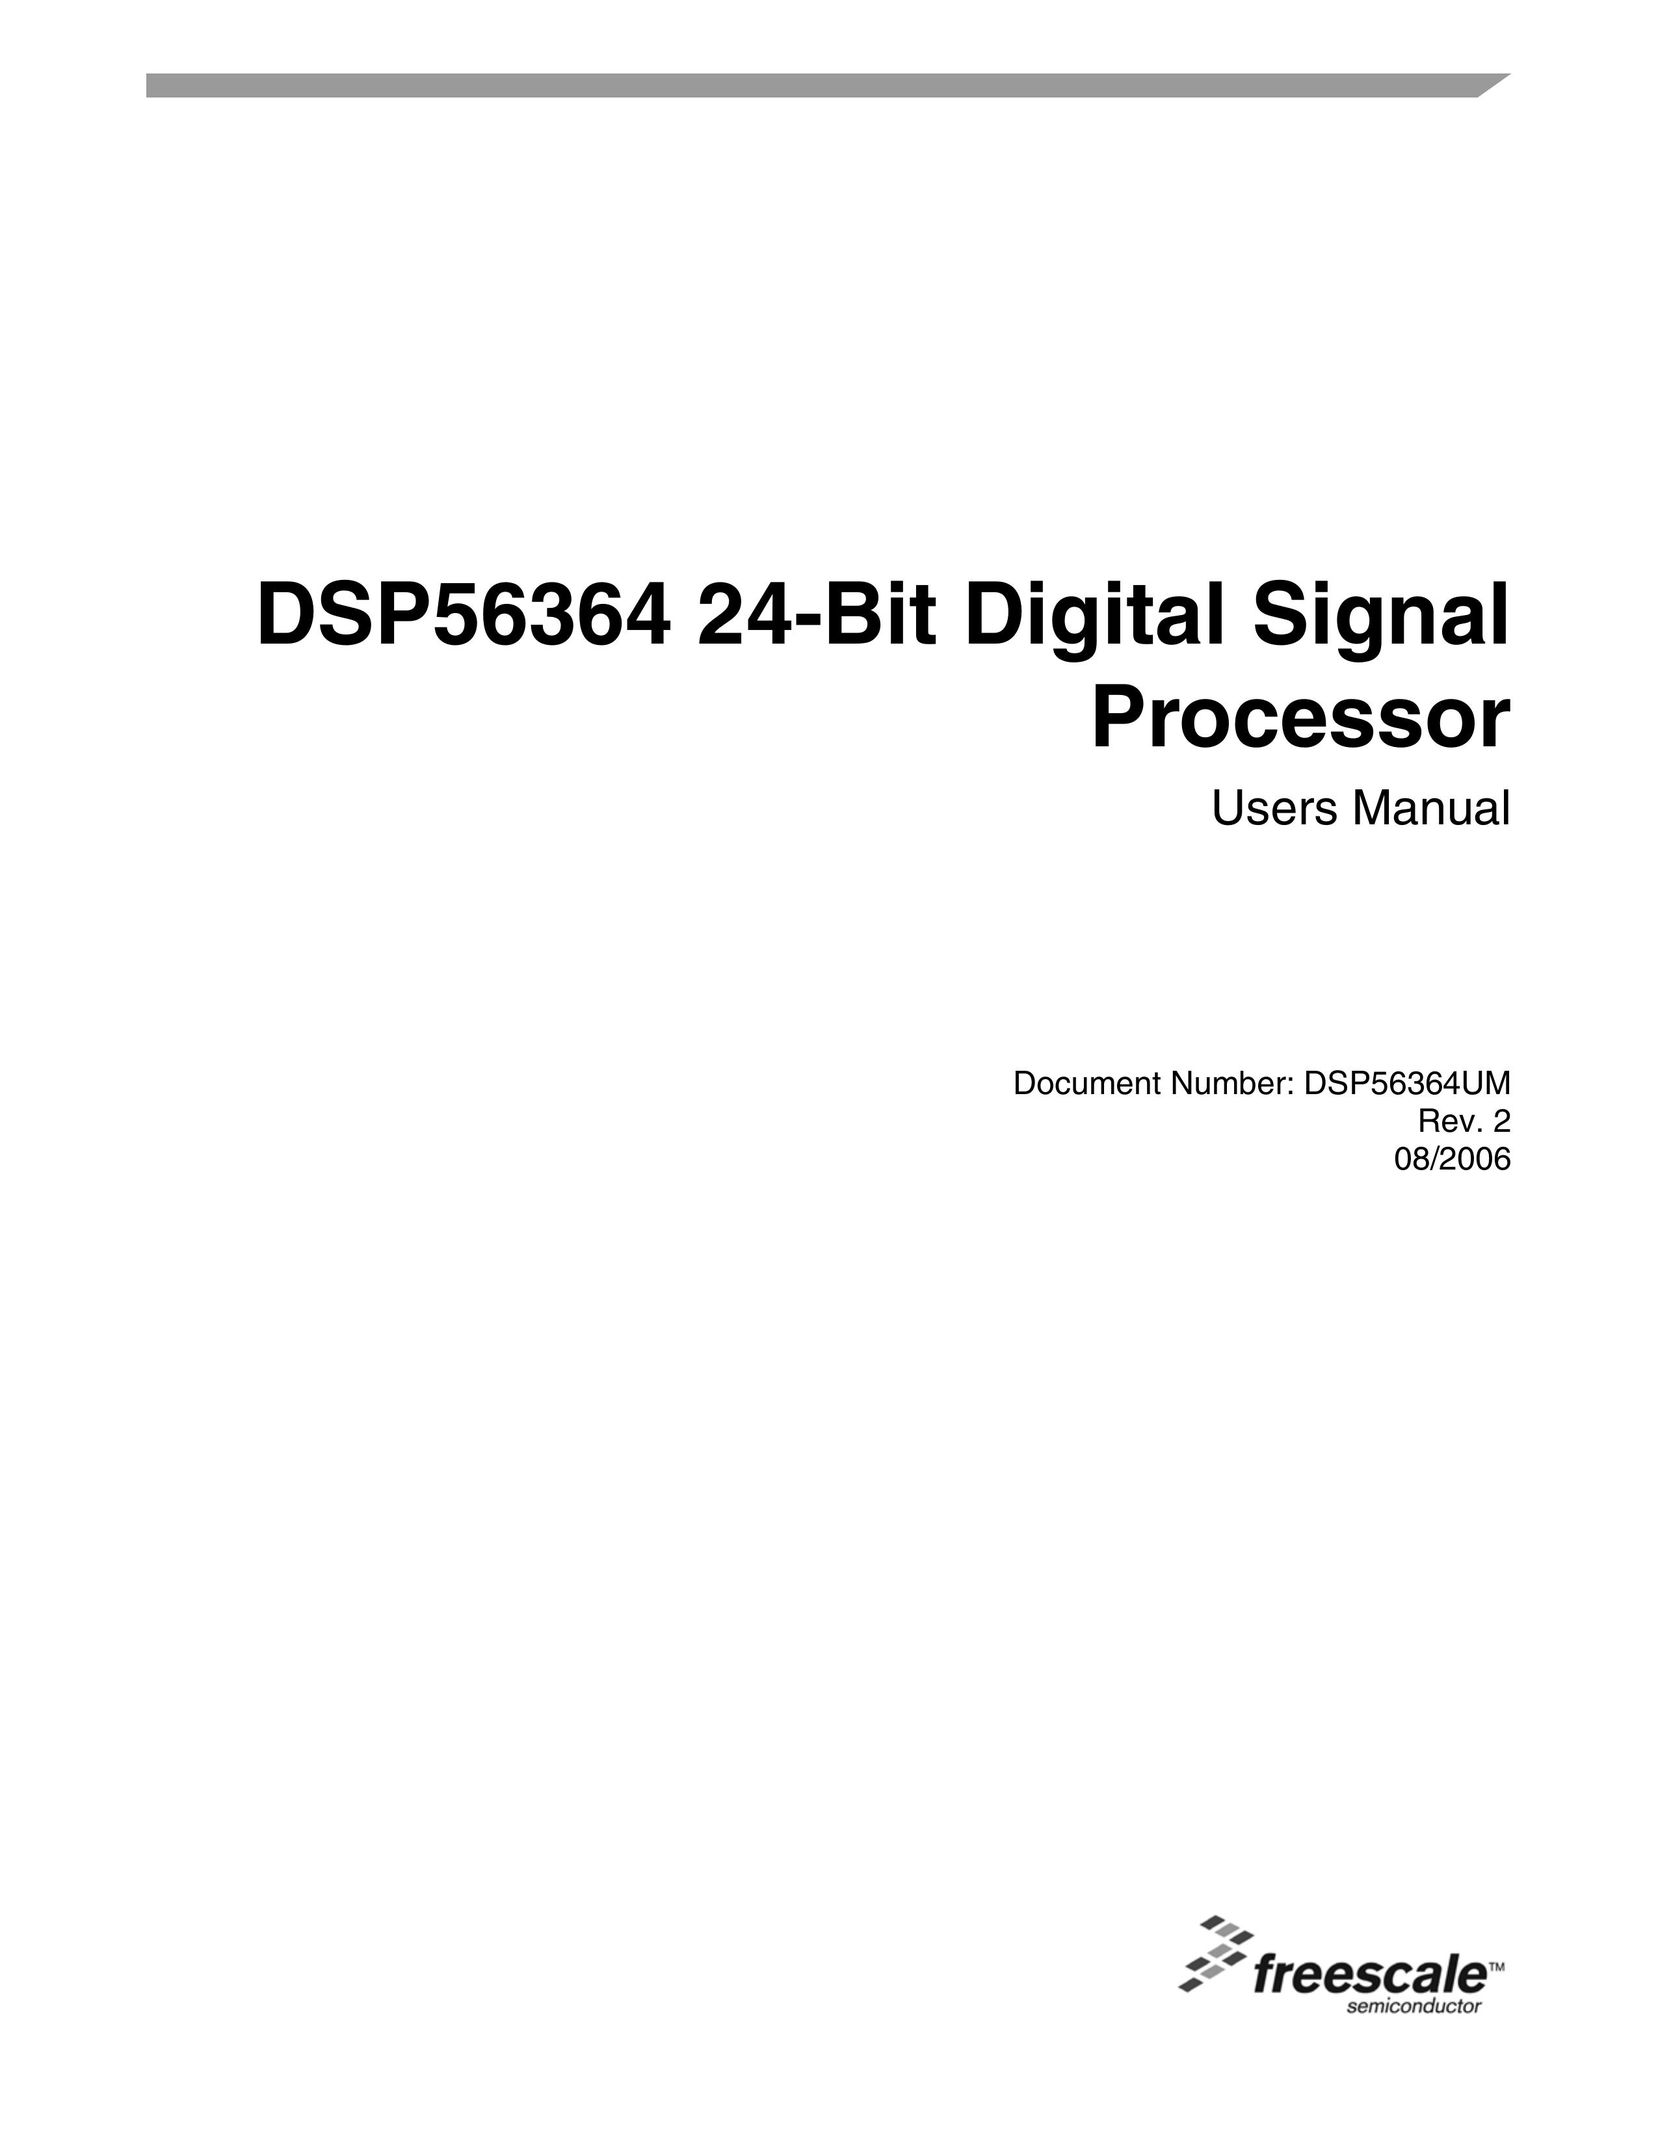 Freescale Semiconductor DSP56364 Bread Maker User Manual